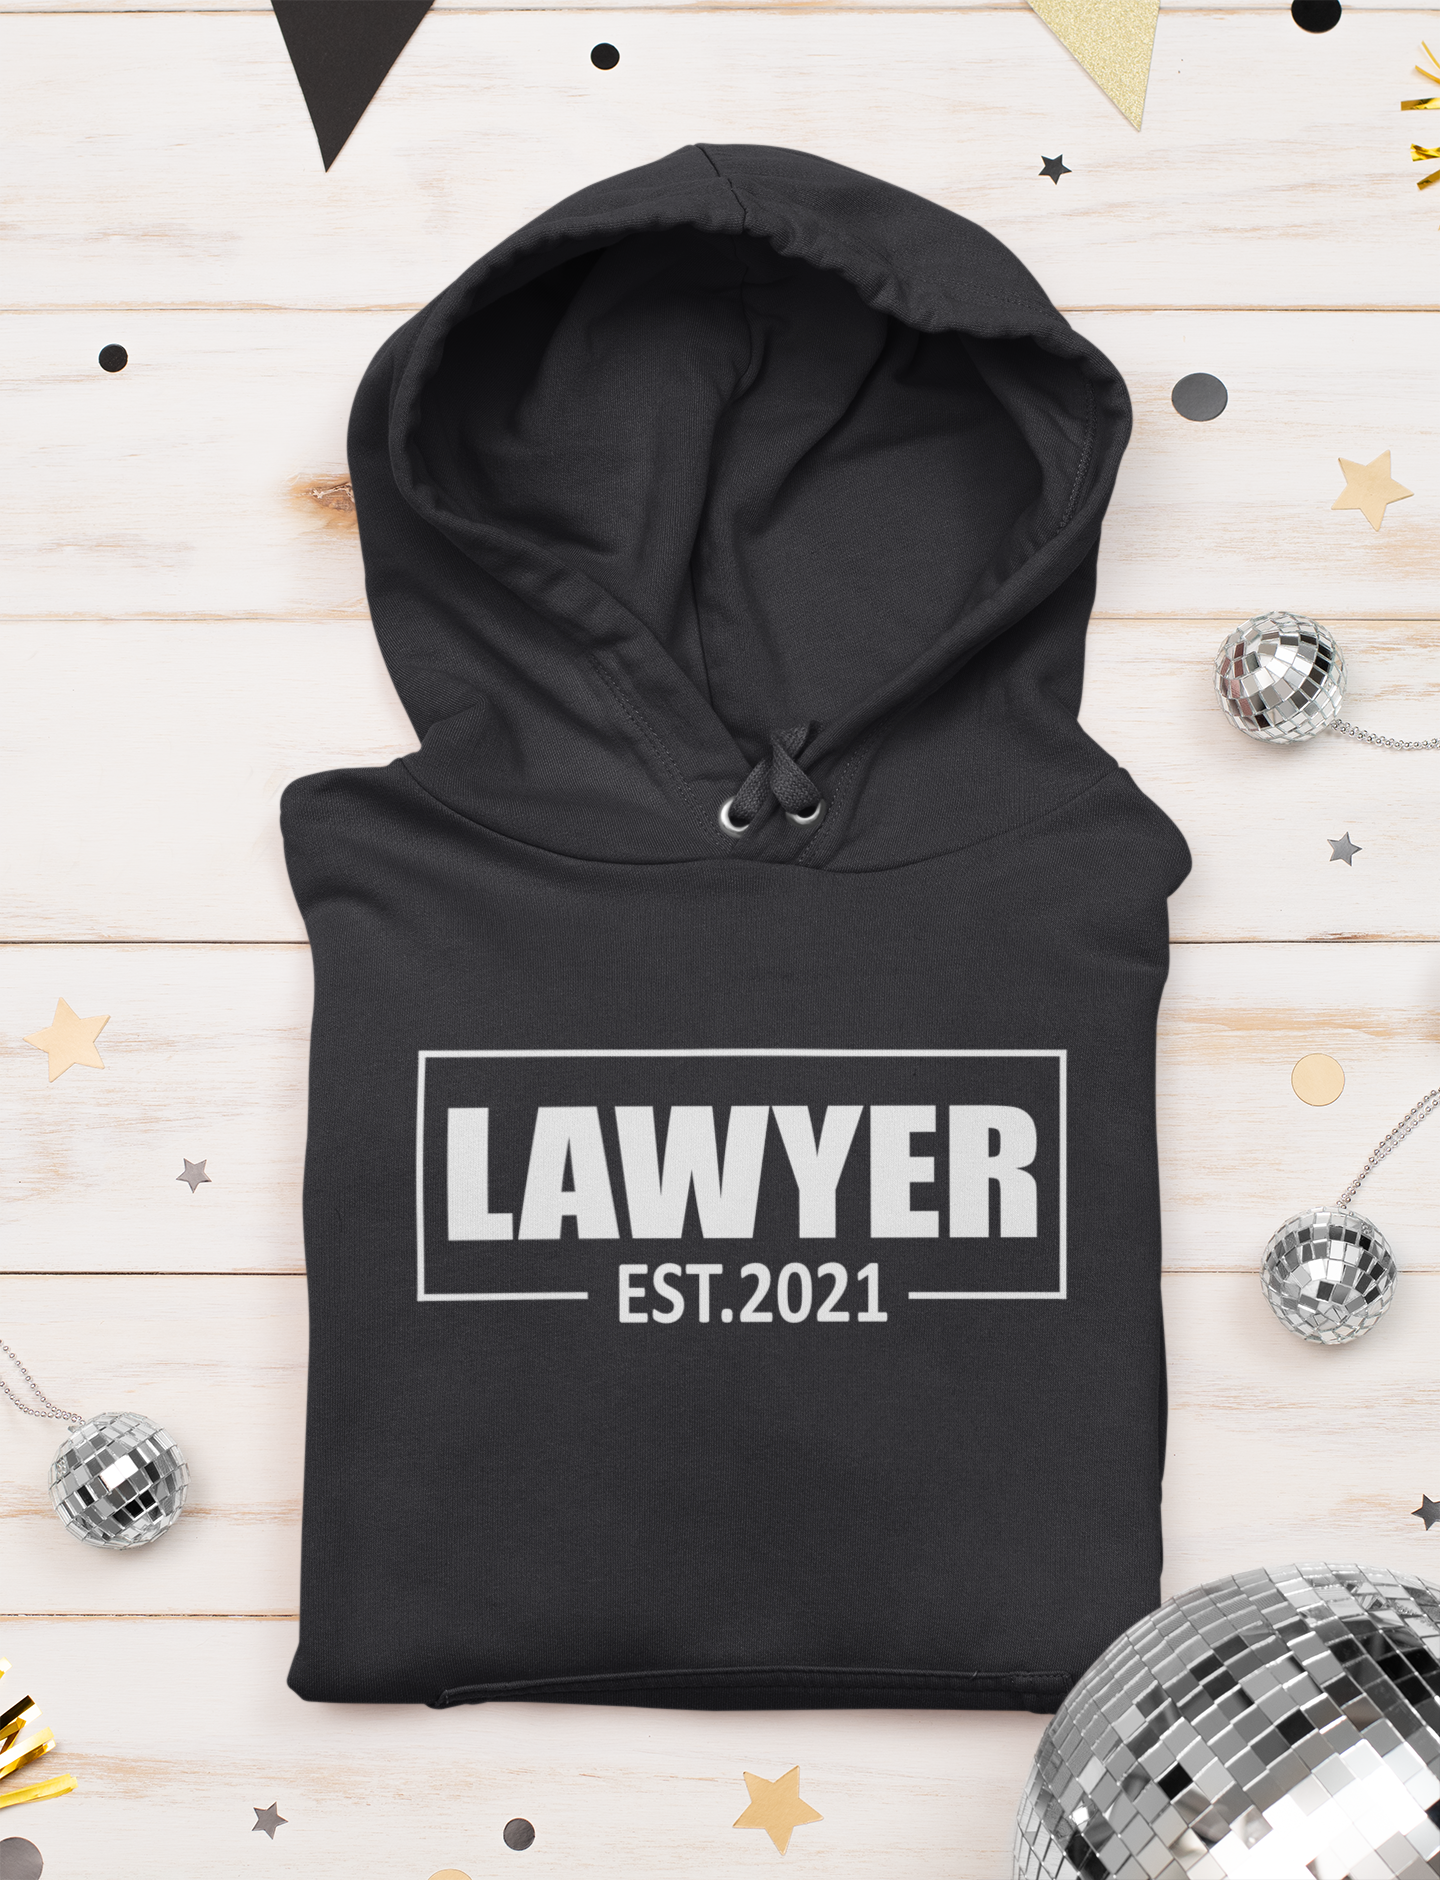 Lawyer Estd 2021 Hoodies for Women-FunkyTeesClub